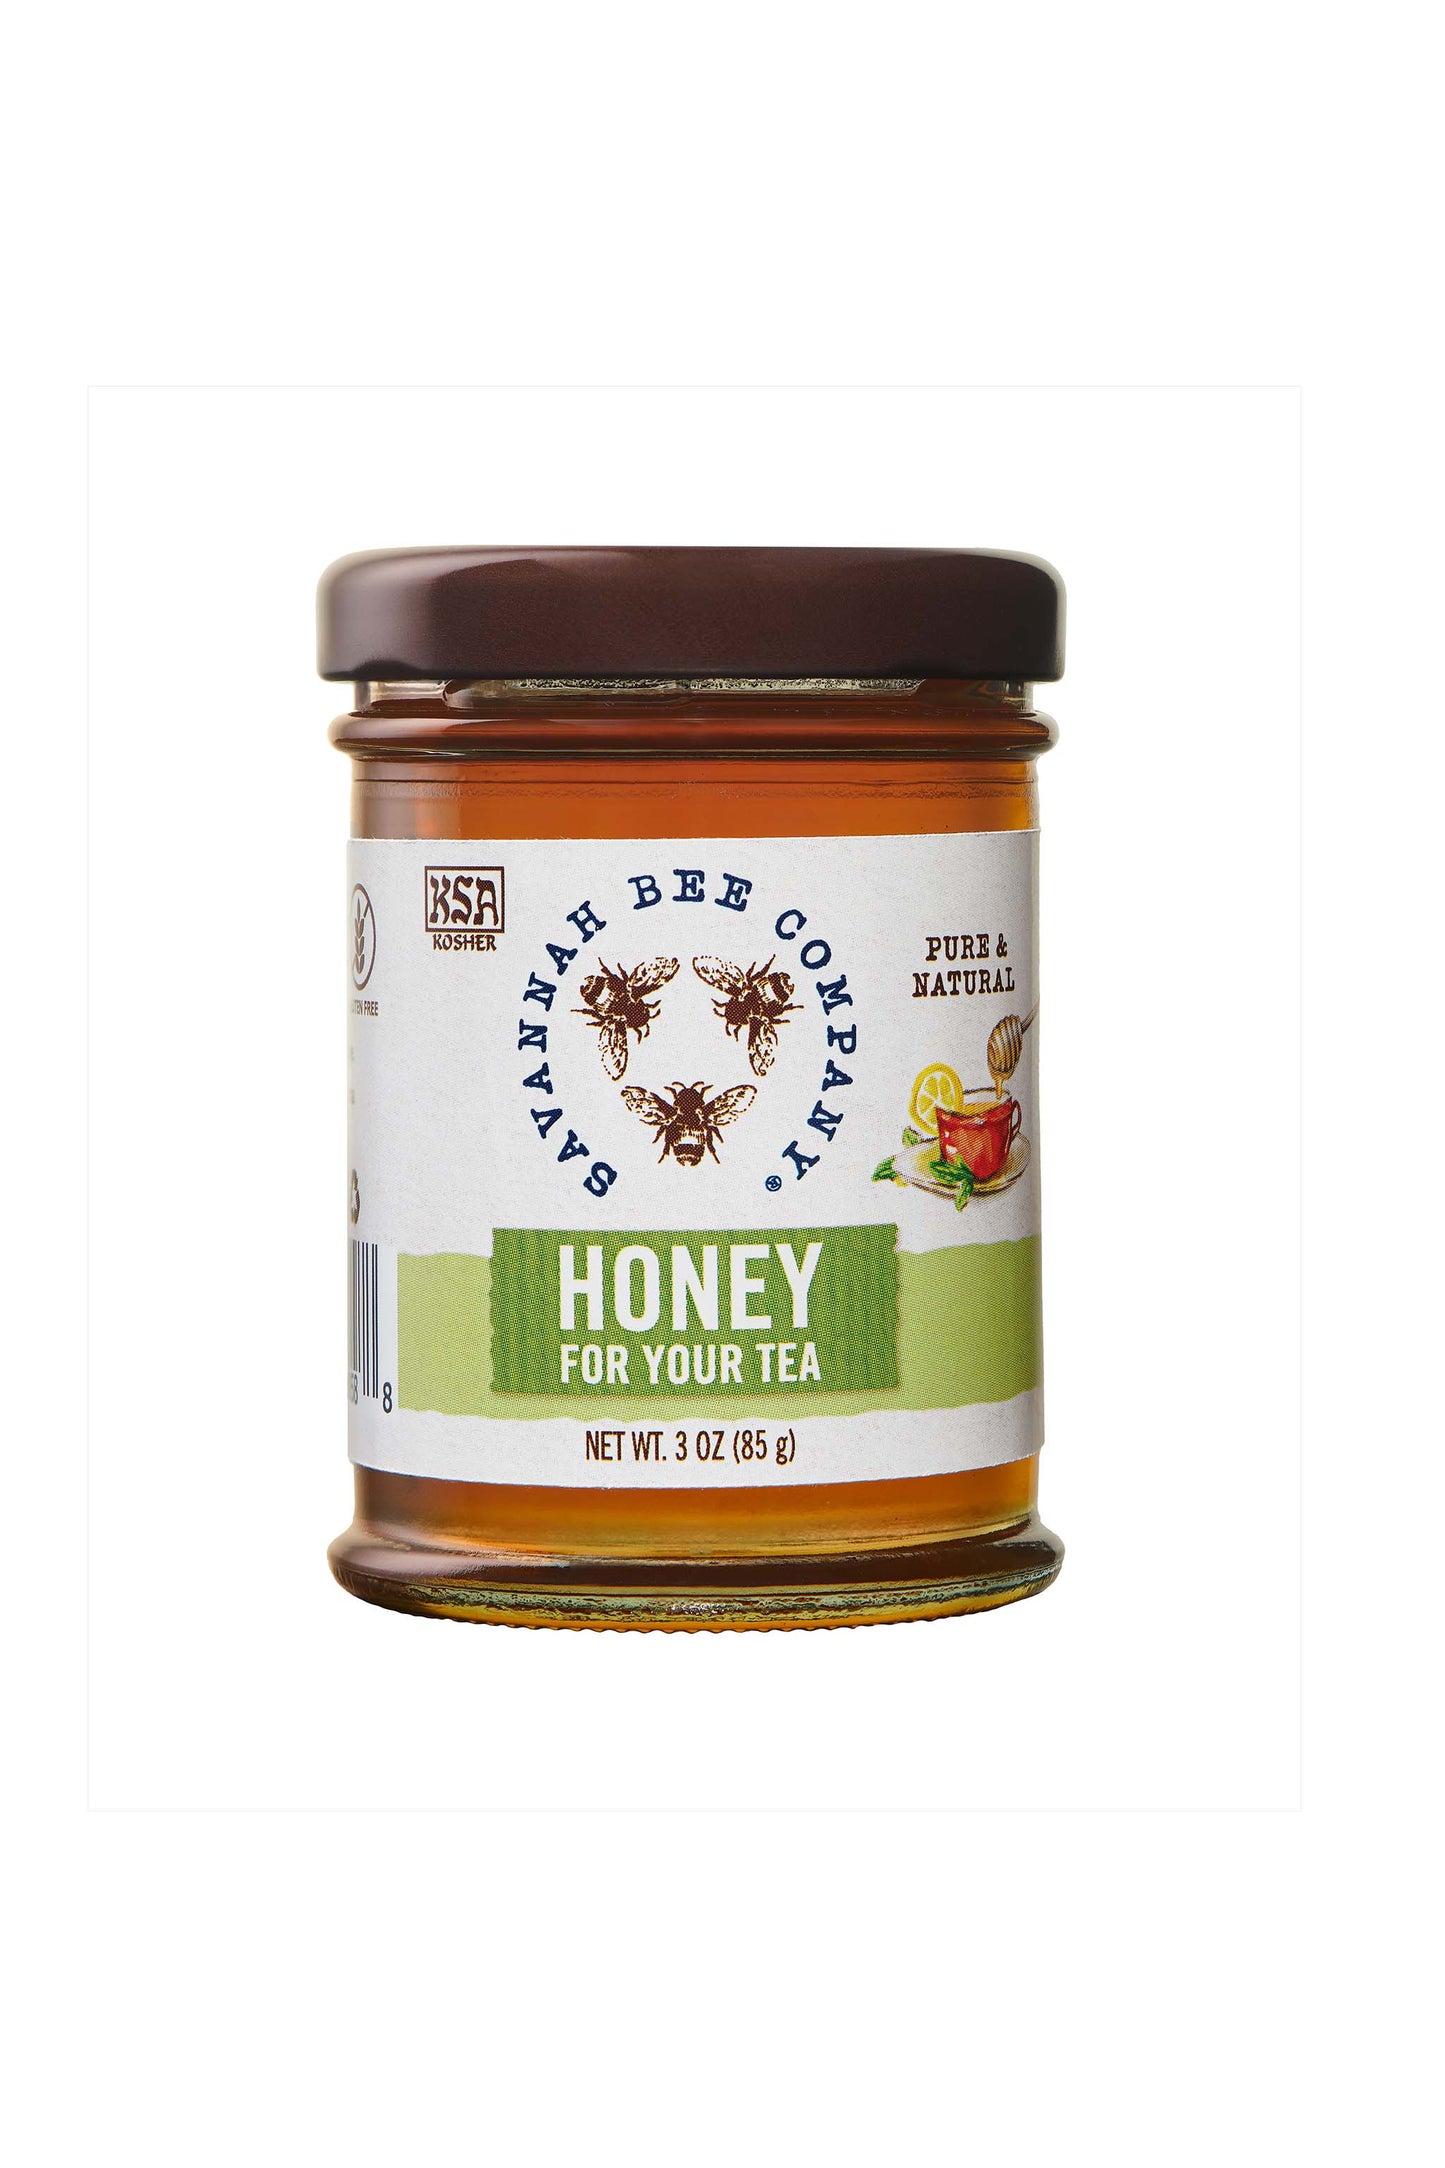 Honey for tea 3 ounce studio shot.